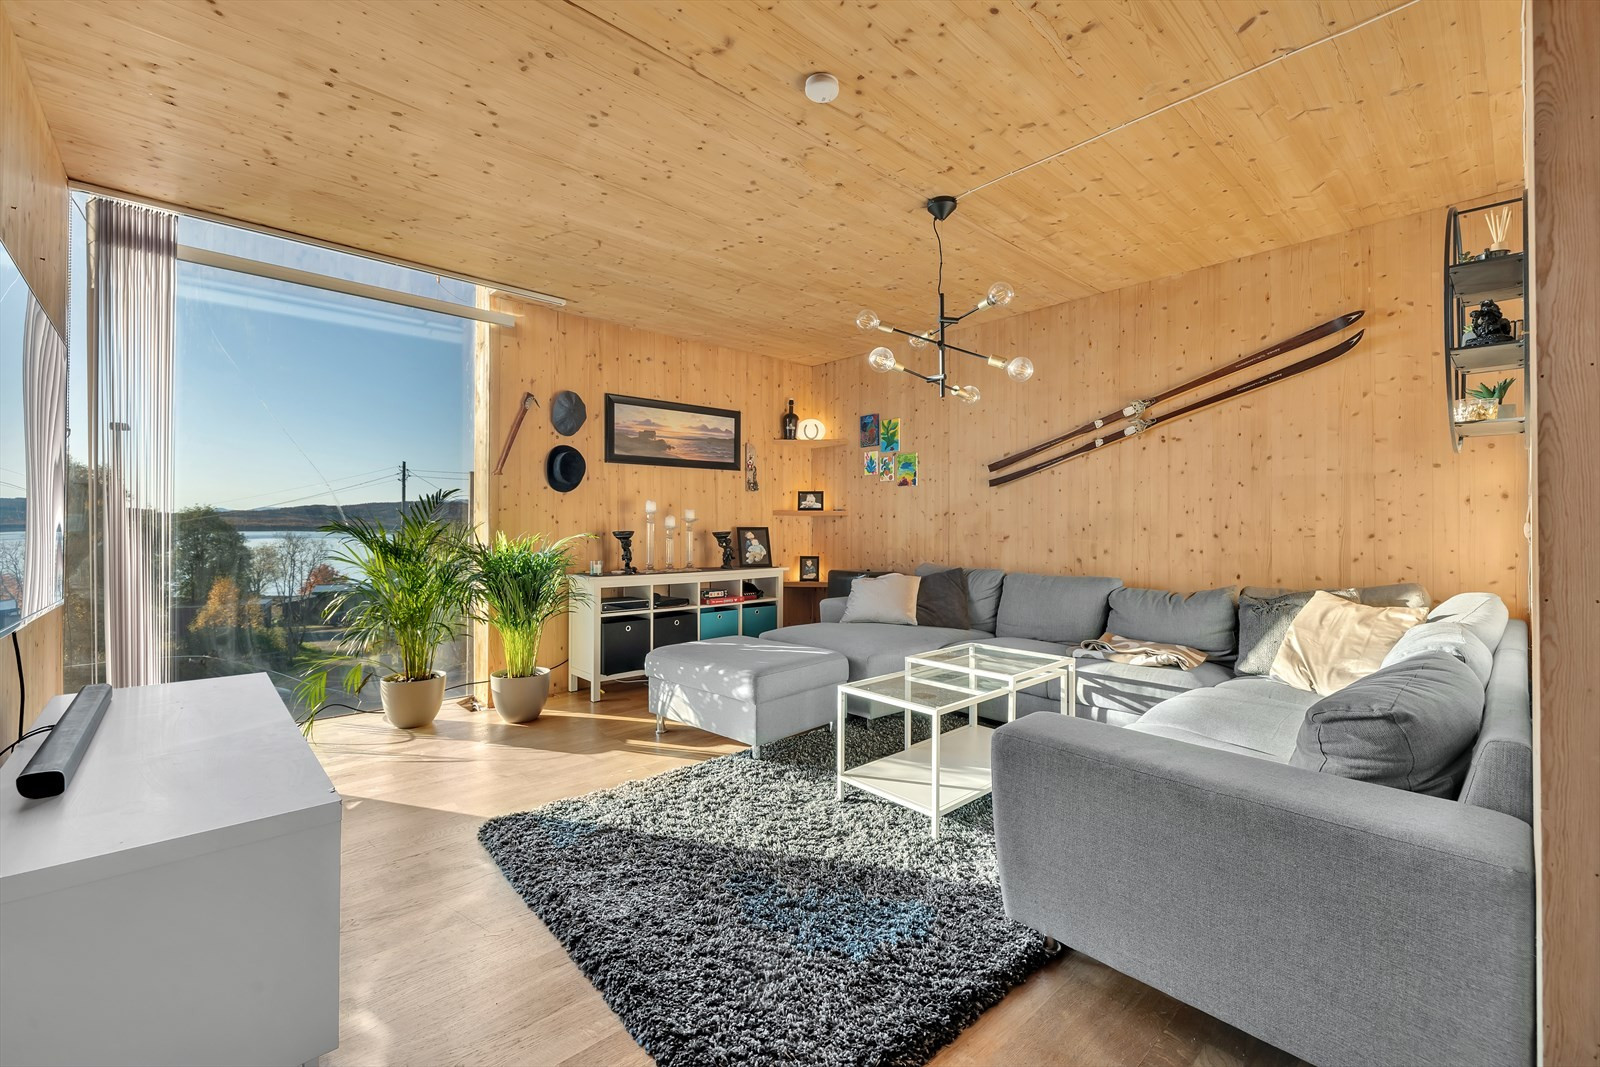 Stue med stort vindu - utsikt mot Sandnessundet/Håkøya